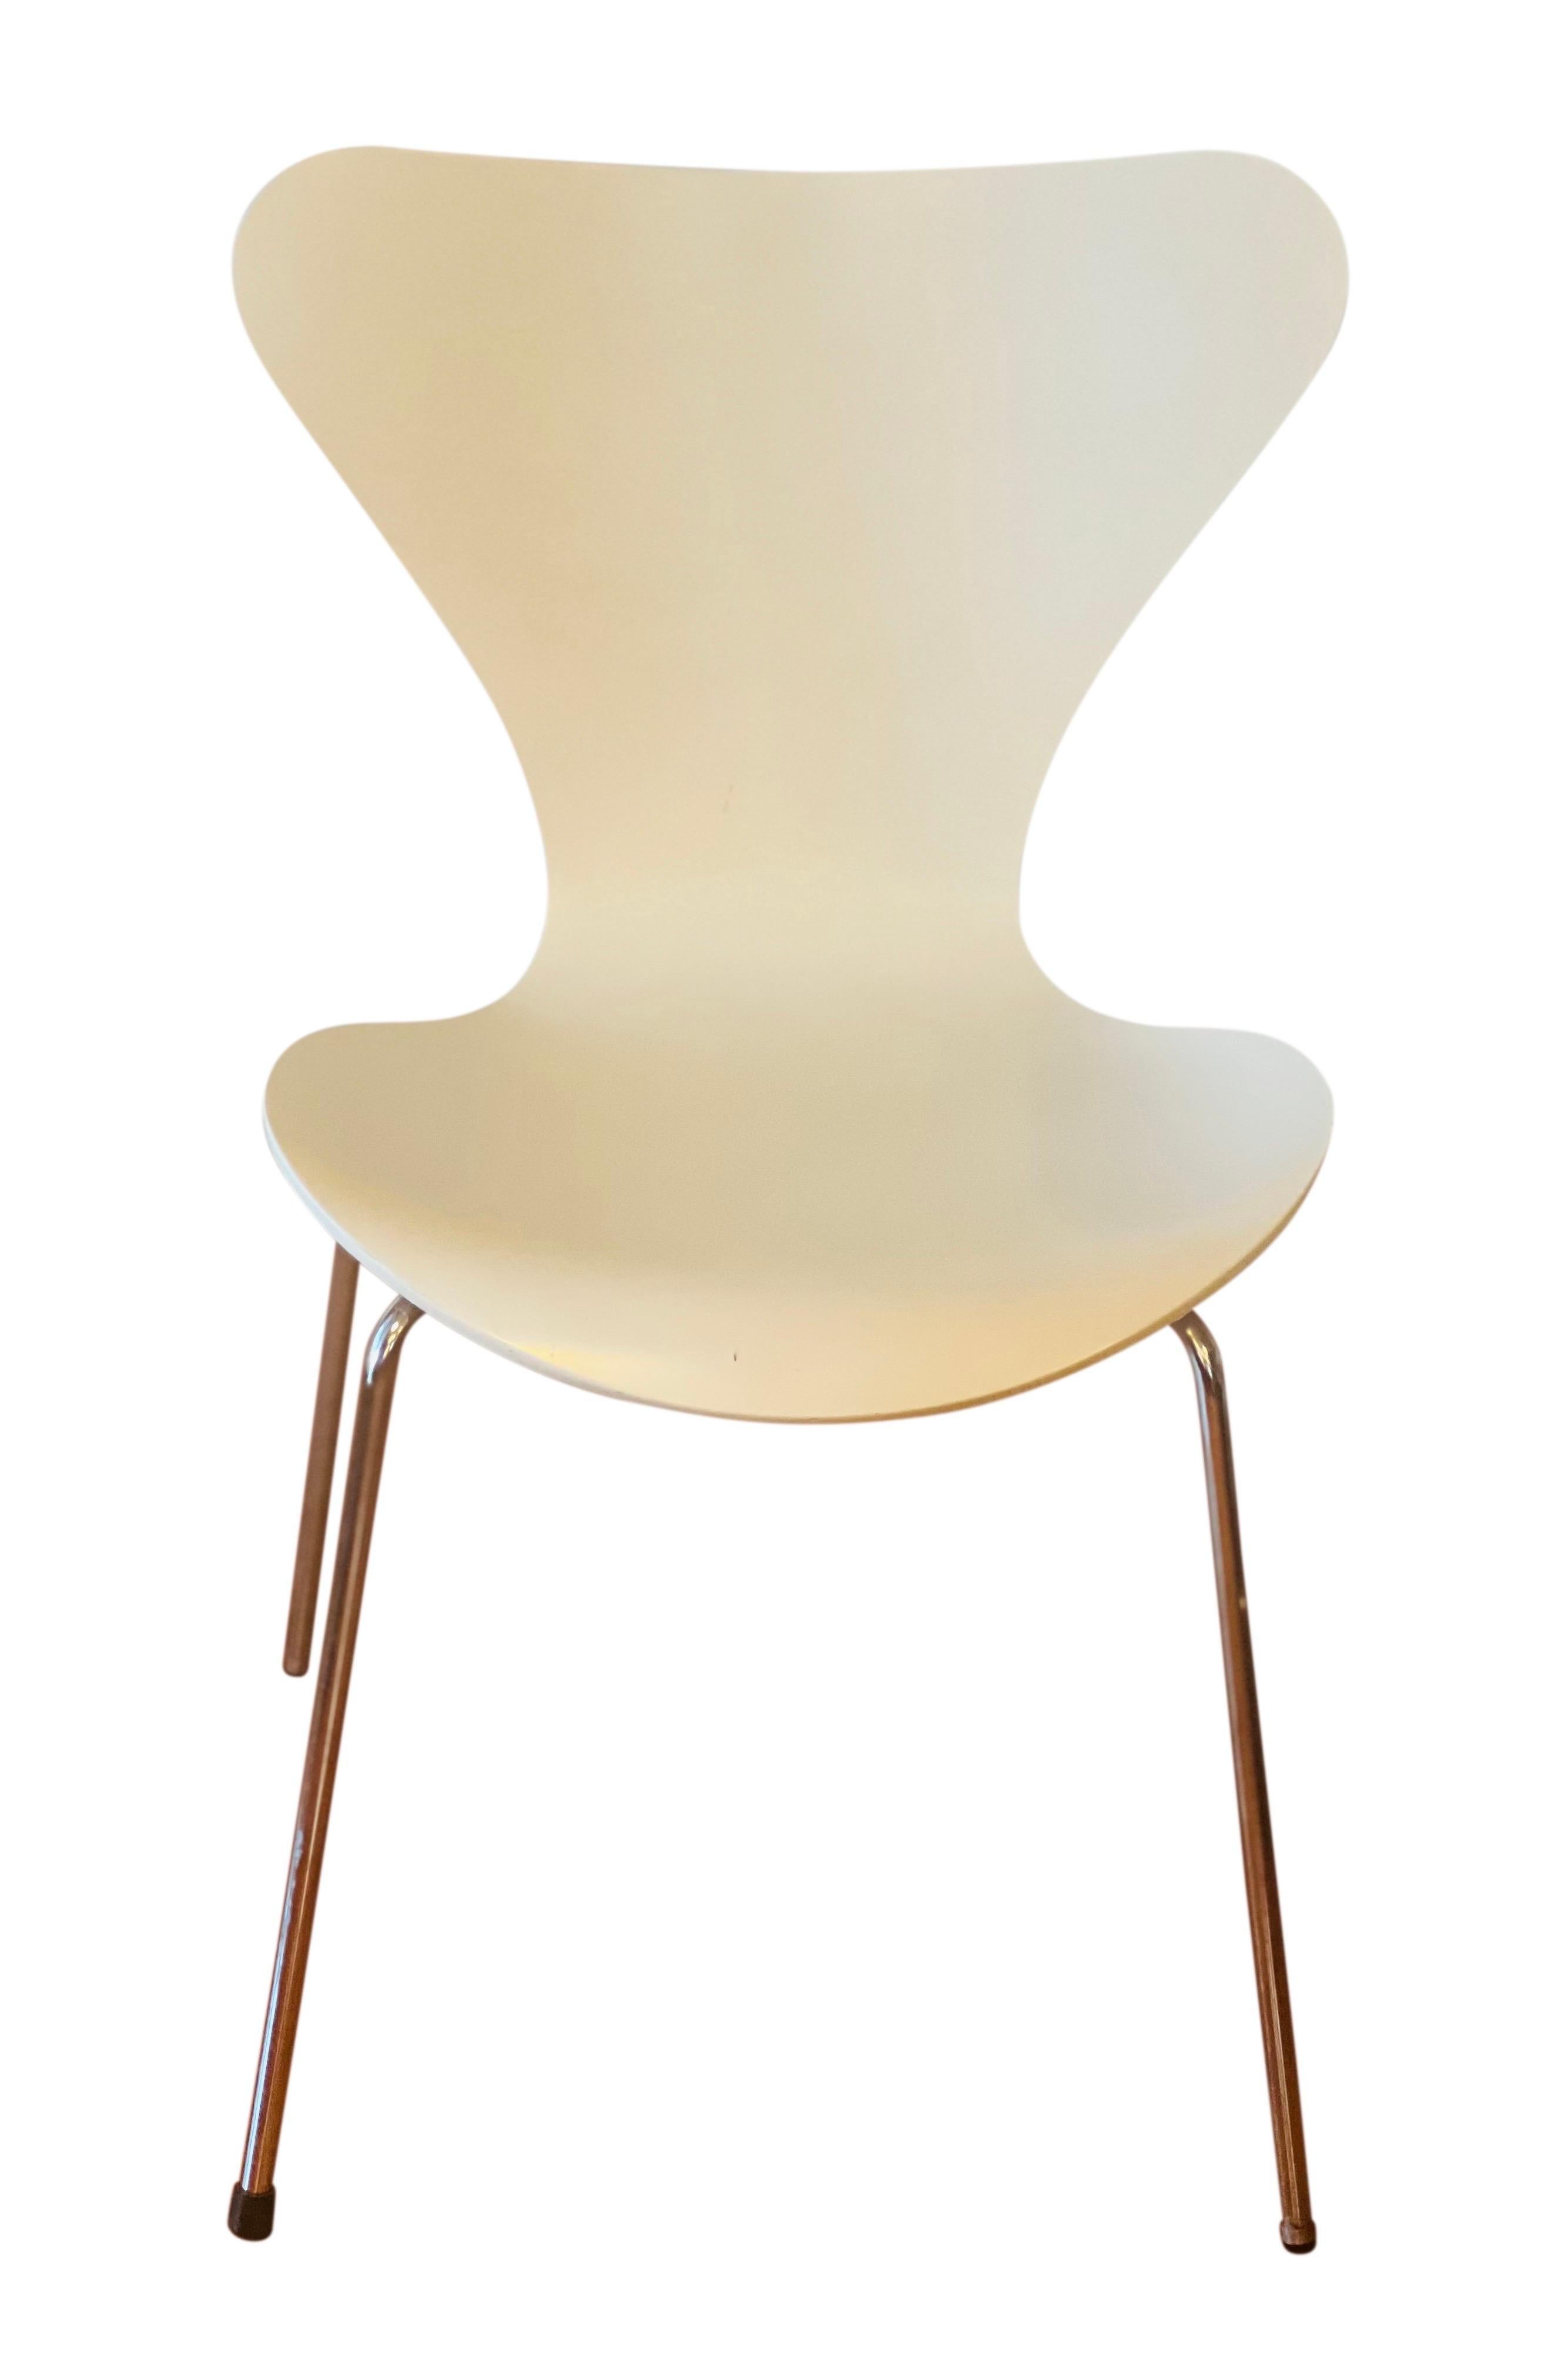 Scandinavian Modern Arne Jacobsen for Fritz Hansen Series 7 Chairs in White, Set of 4